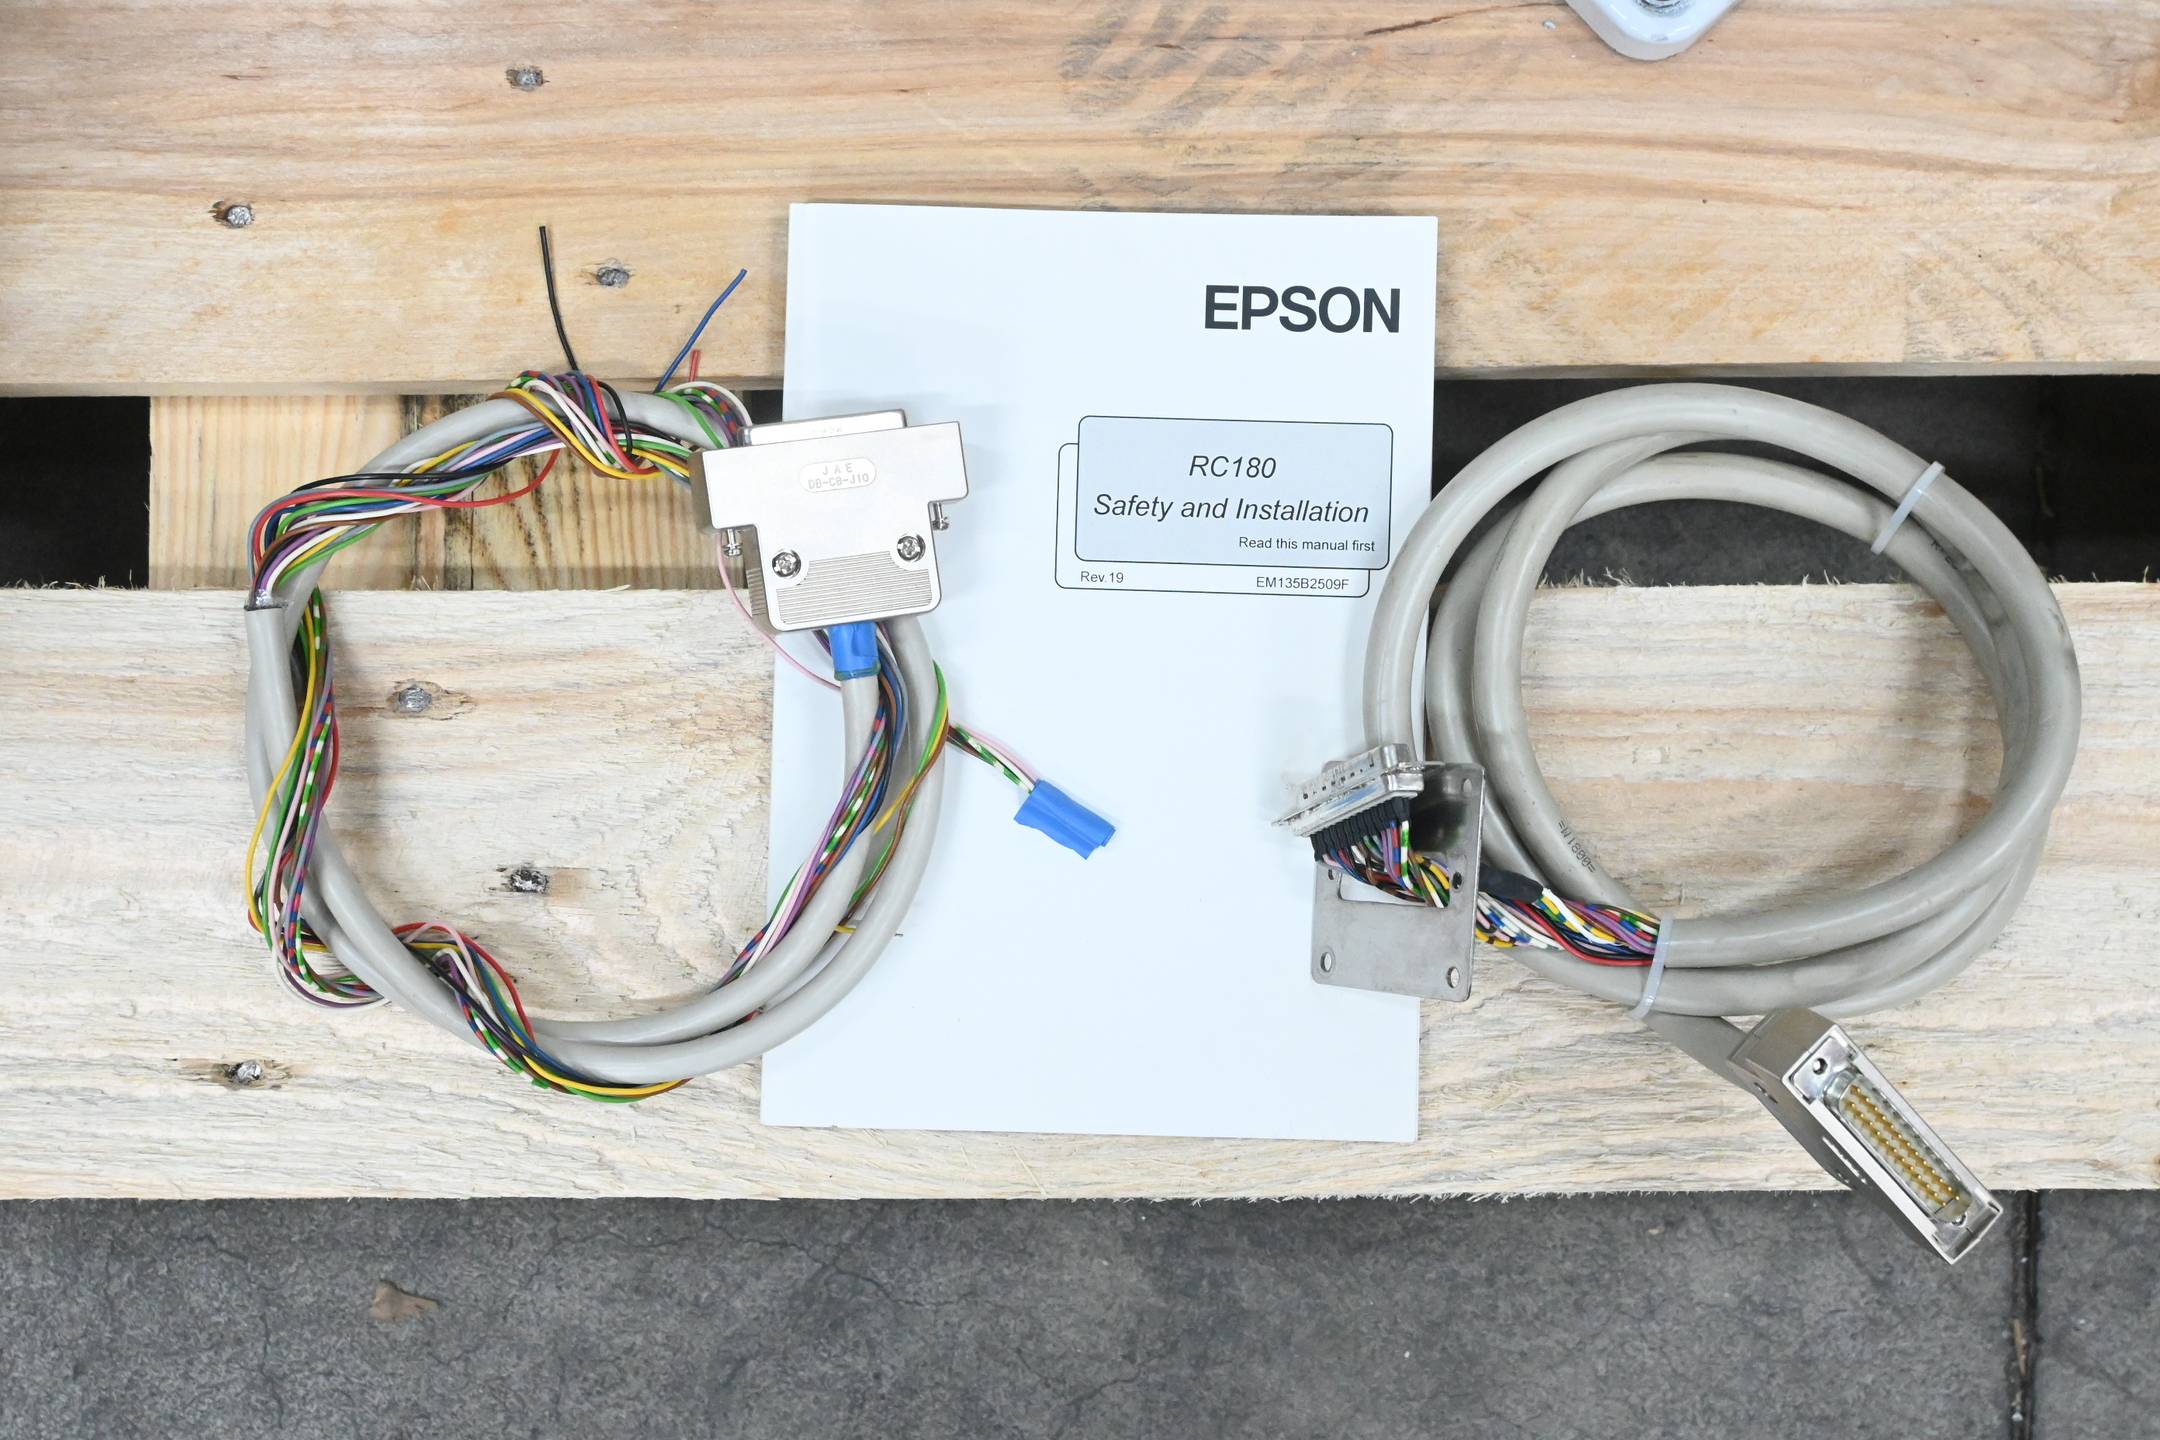 Seiko Epson SCARA Roboter G6-653S inkl. Epson Robot Controller RC180